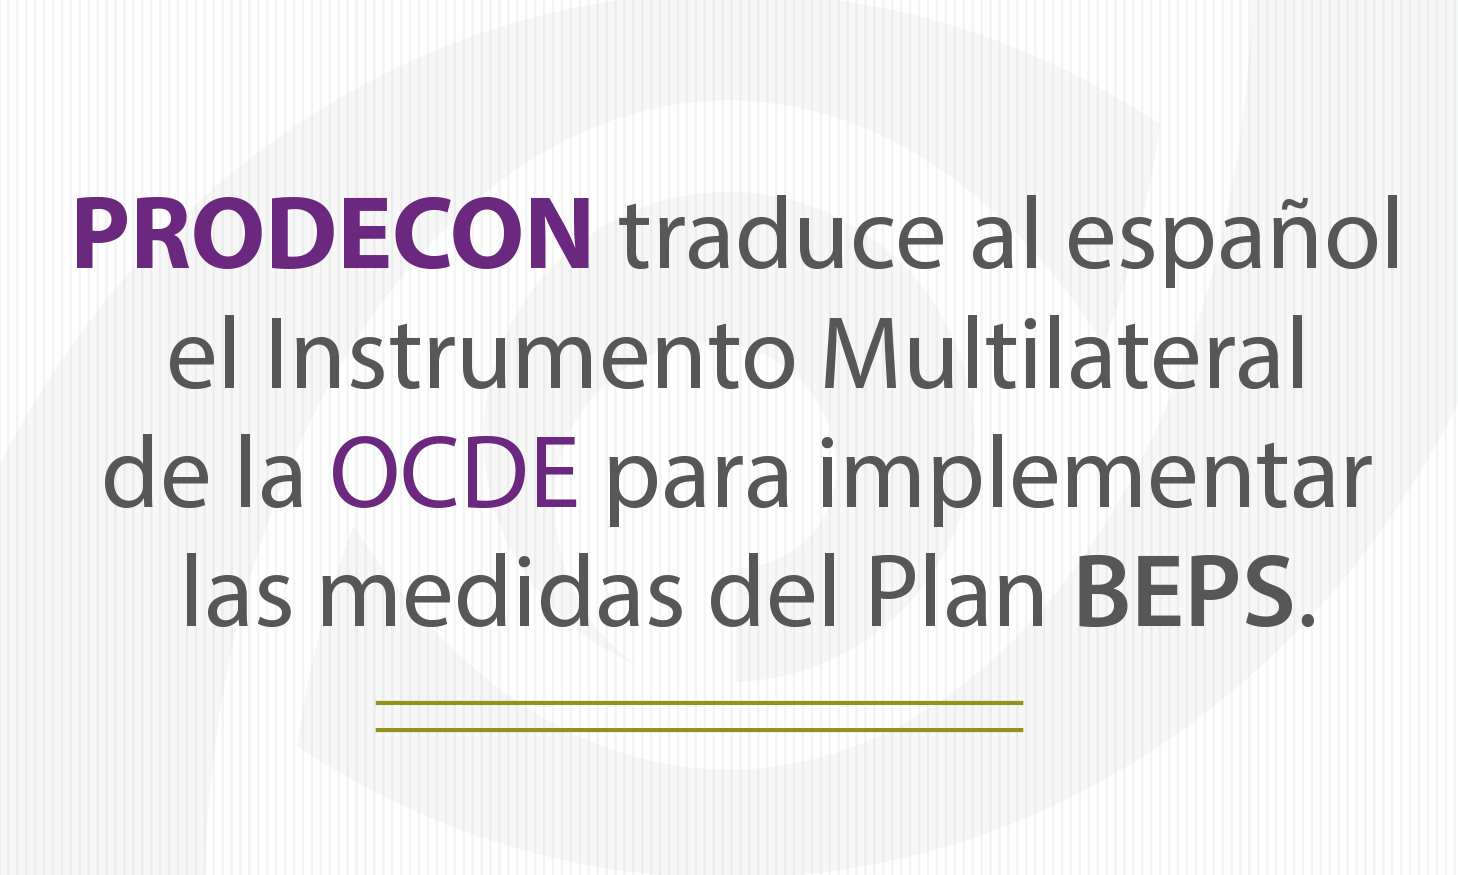 PRODECON traduce al español el Instrumento Multilateral de la OCDE para implementar las medidas del Plan BEPS.